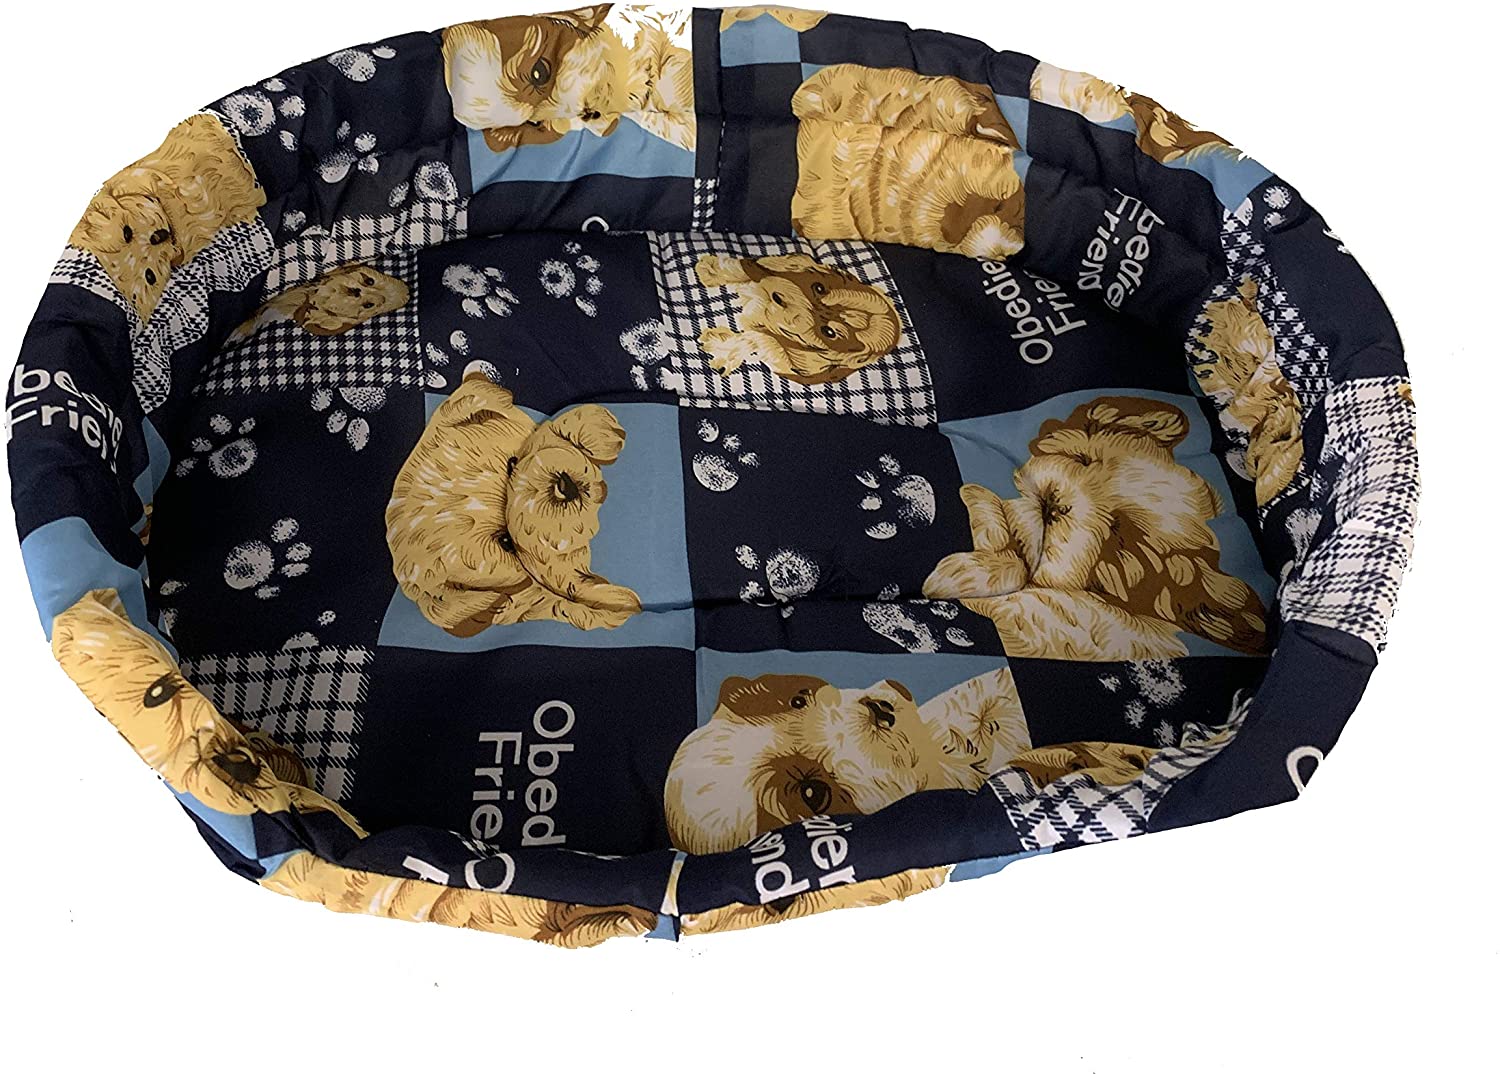  Ducomi® Fufy 2 – Cama para Perros y Gatos de Oxford – Suave caseta para Animales domésticos – Fácil de Lavar 